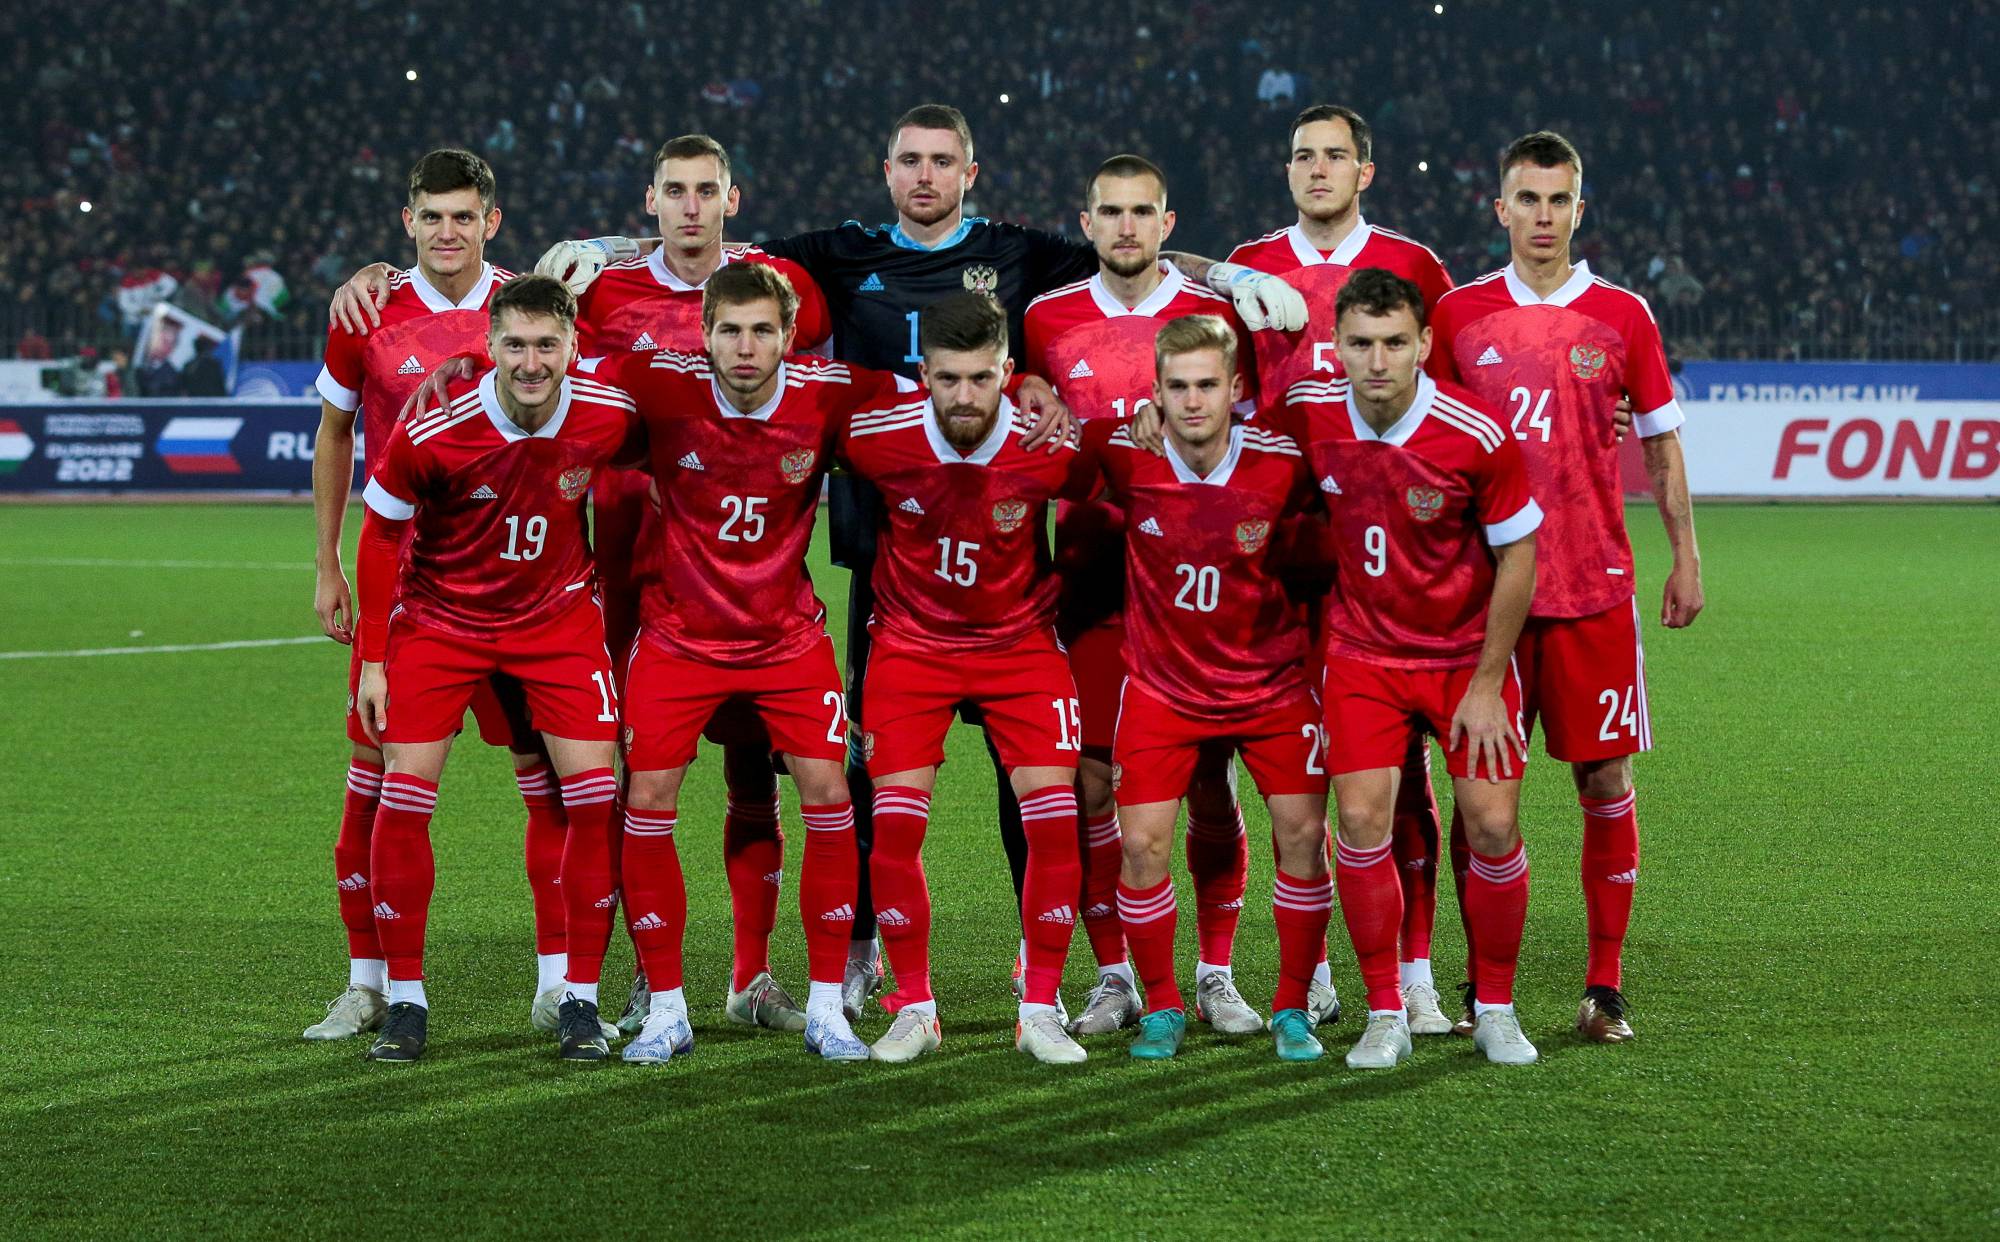 Rússia vai participar no campeonato da Associação de Futebol da Ásia  Central - Futebol - Correio da Manhã